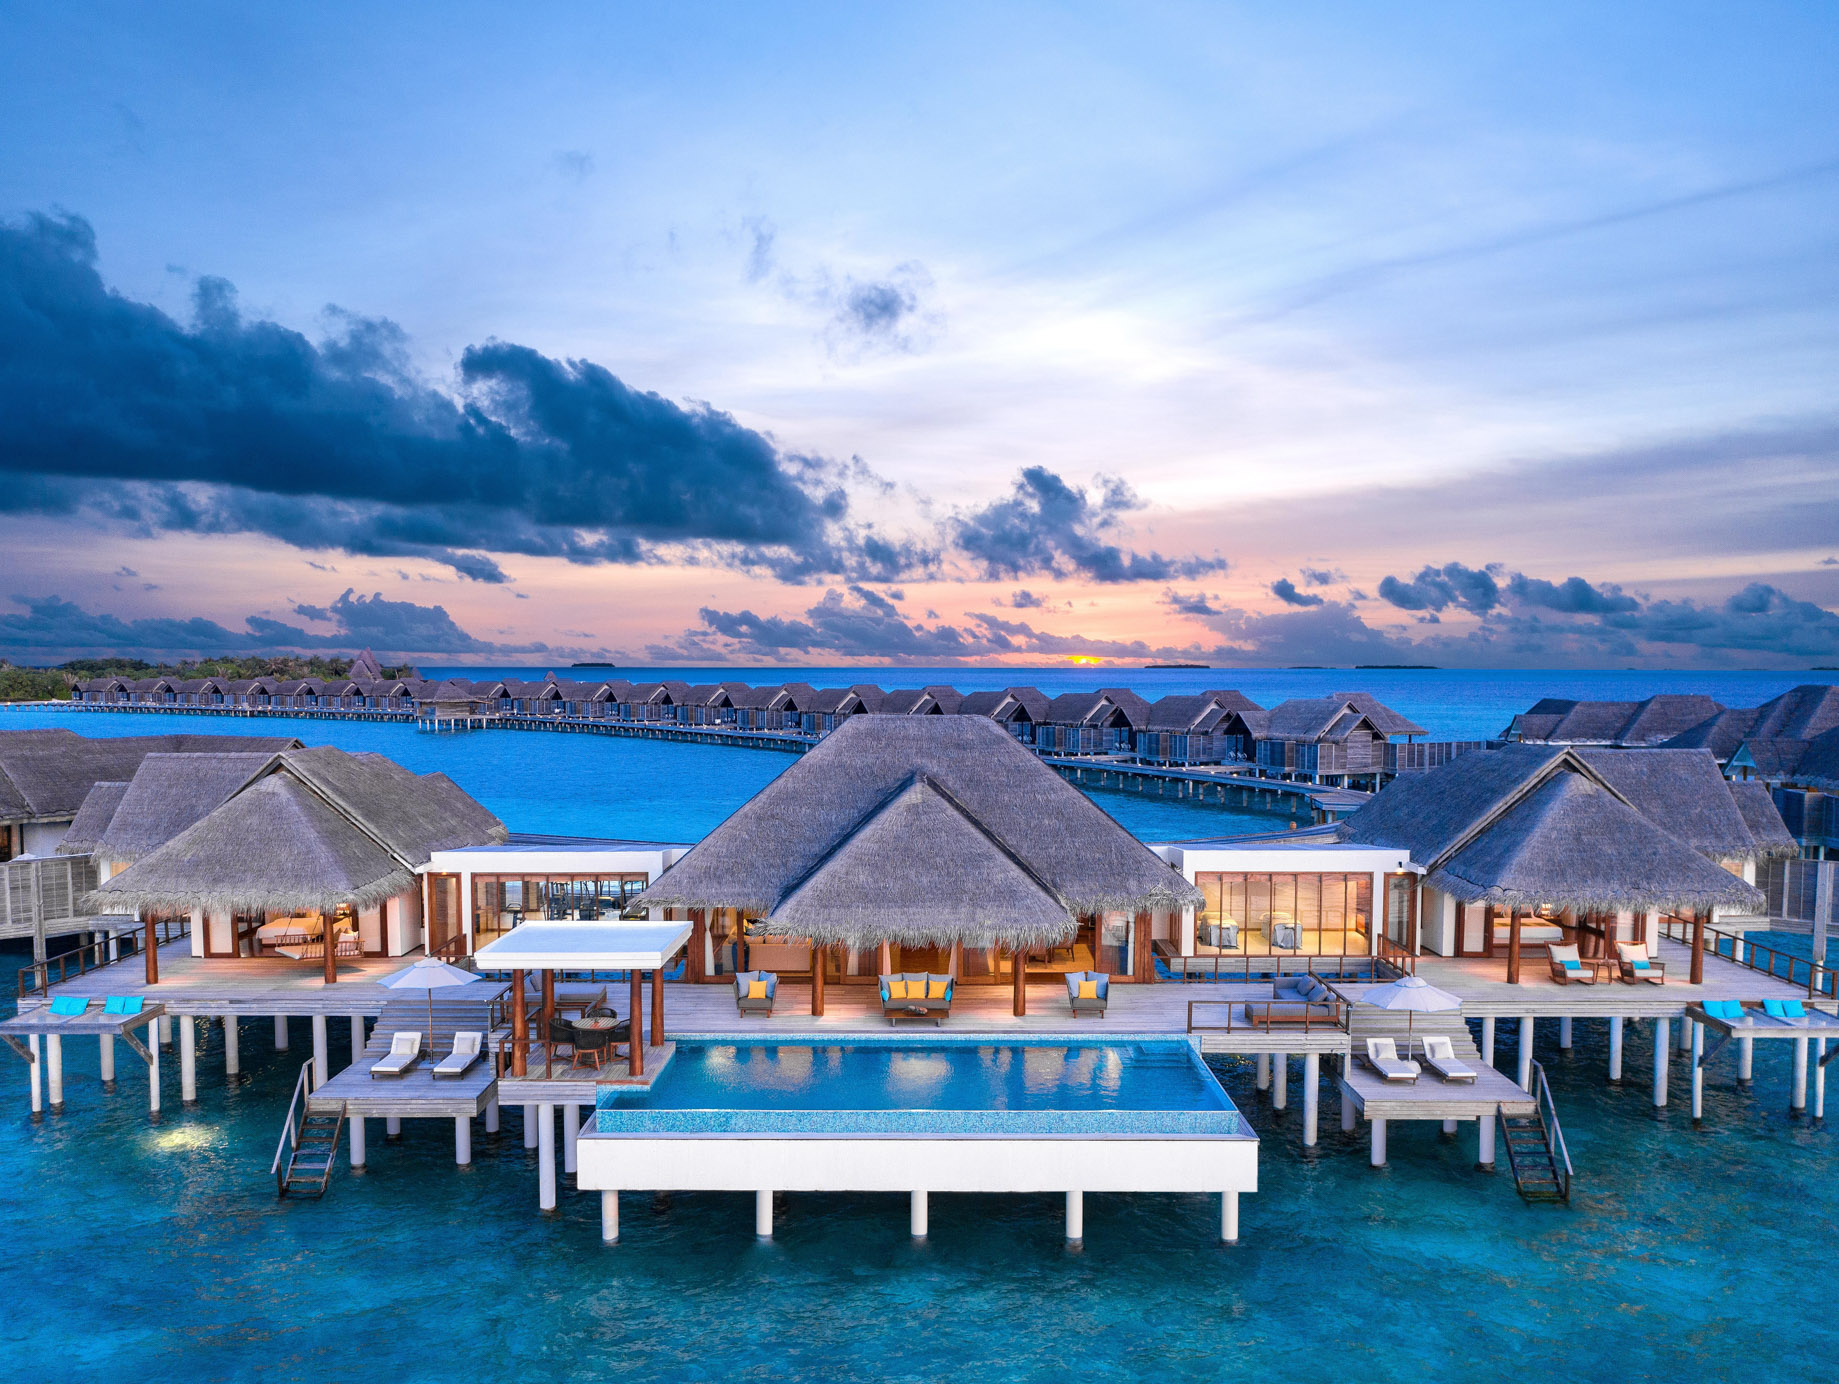 Anantara Kihavah Maldives Villas Resort – Baa Atoll, Maldives – Two Bedroom Sunset Over Water Pool Residence Aerial View Sunset